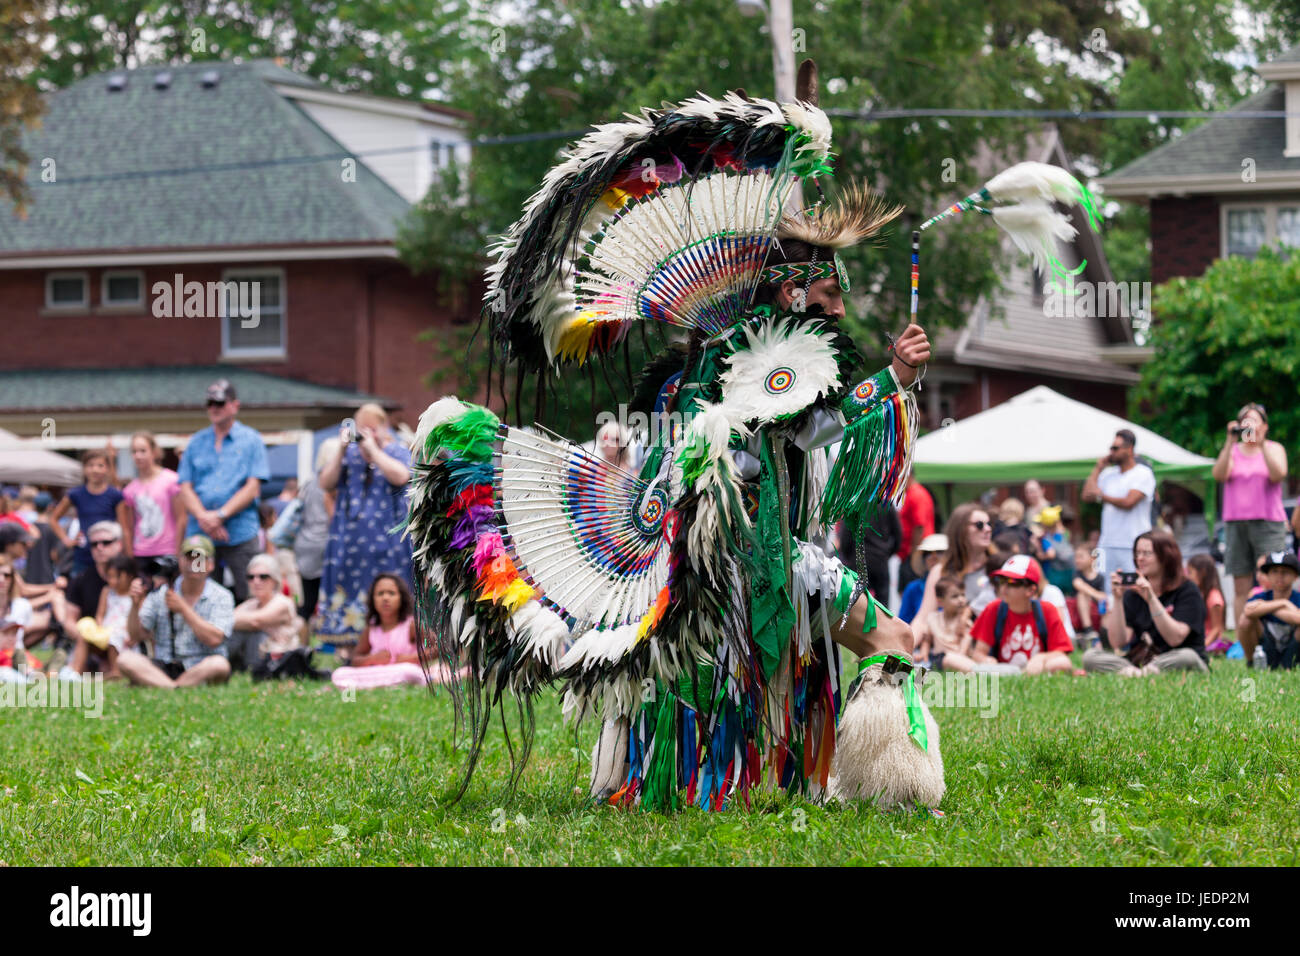 Mitglieder der kanadischen First Nations Gemeinschaften feiern und tanzen während der jährliche Tag der Aborigines Solidarität. Stockfoto